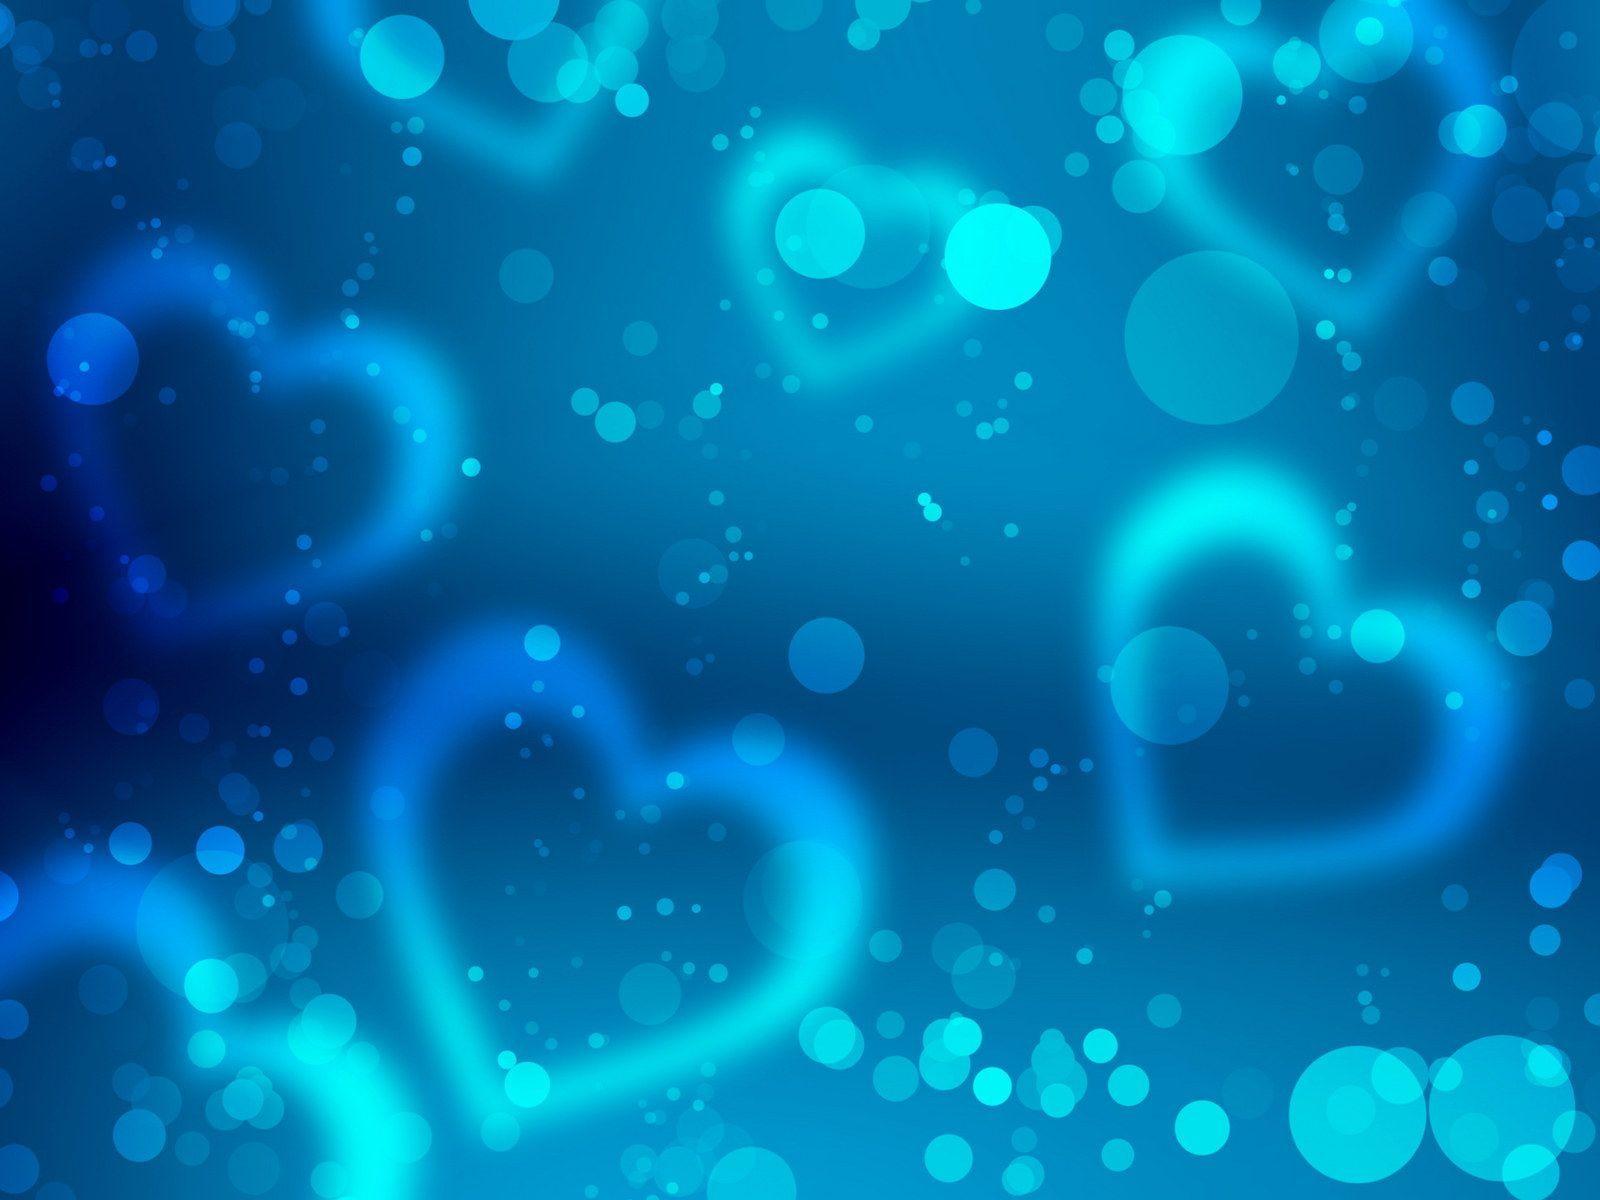 blue heart wallpaper